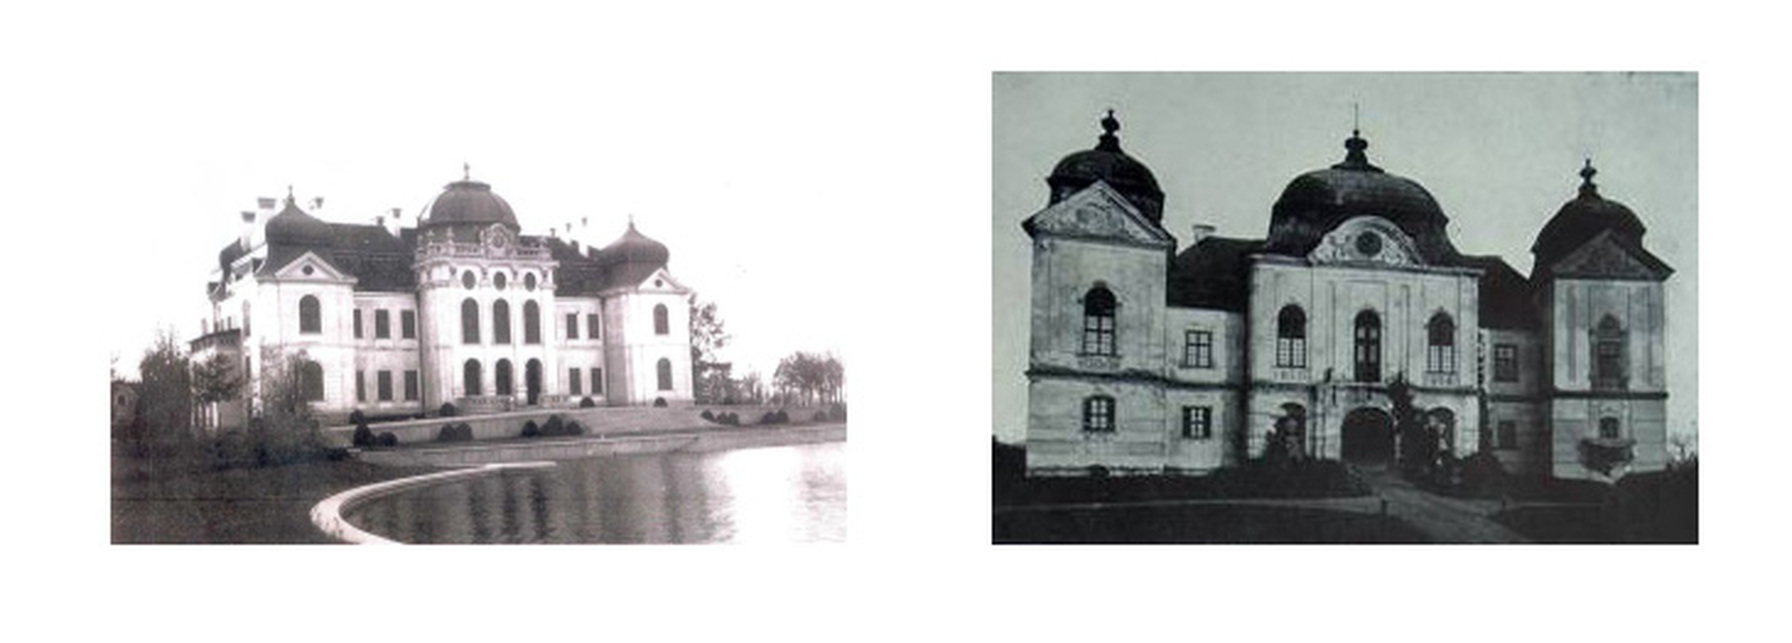 A külsőleg elkészült csorvási Wenckheim-kastély 1944-ben és előképe, a barokk gácsi Forgách-kastély archív felvételen. Képek forrása: wenckheim.hu 